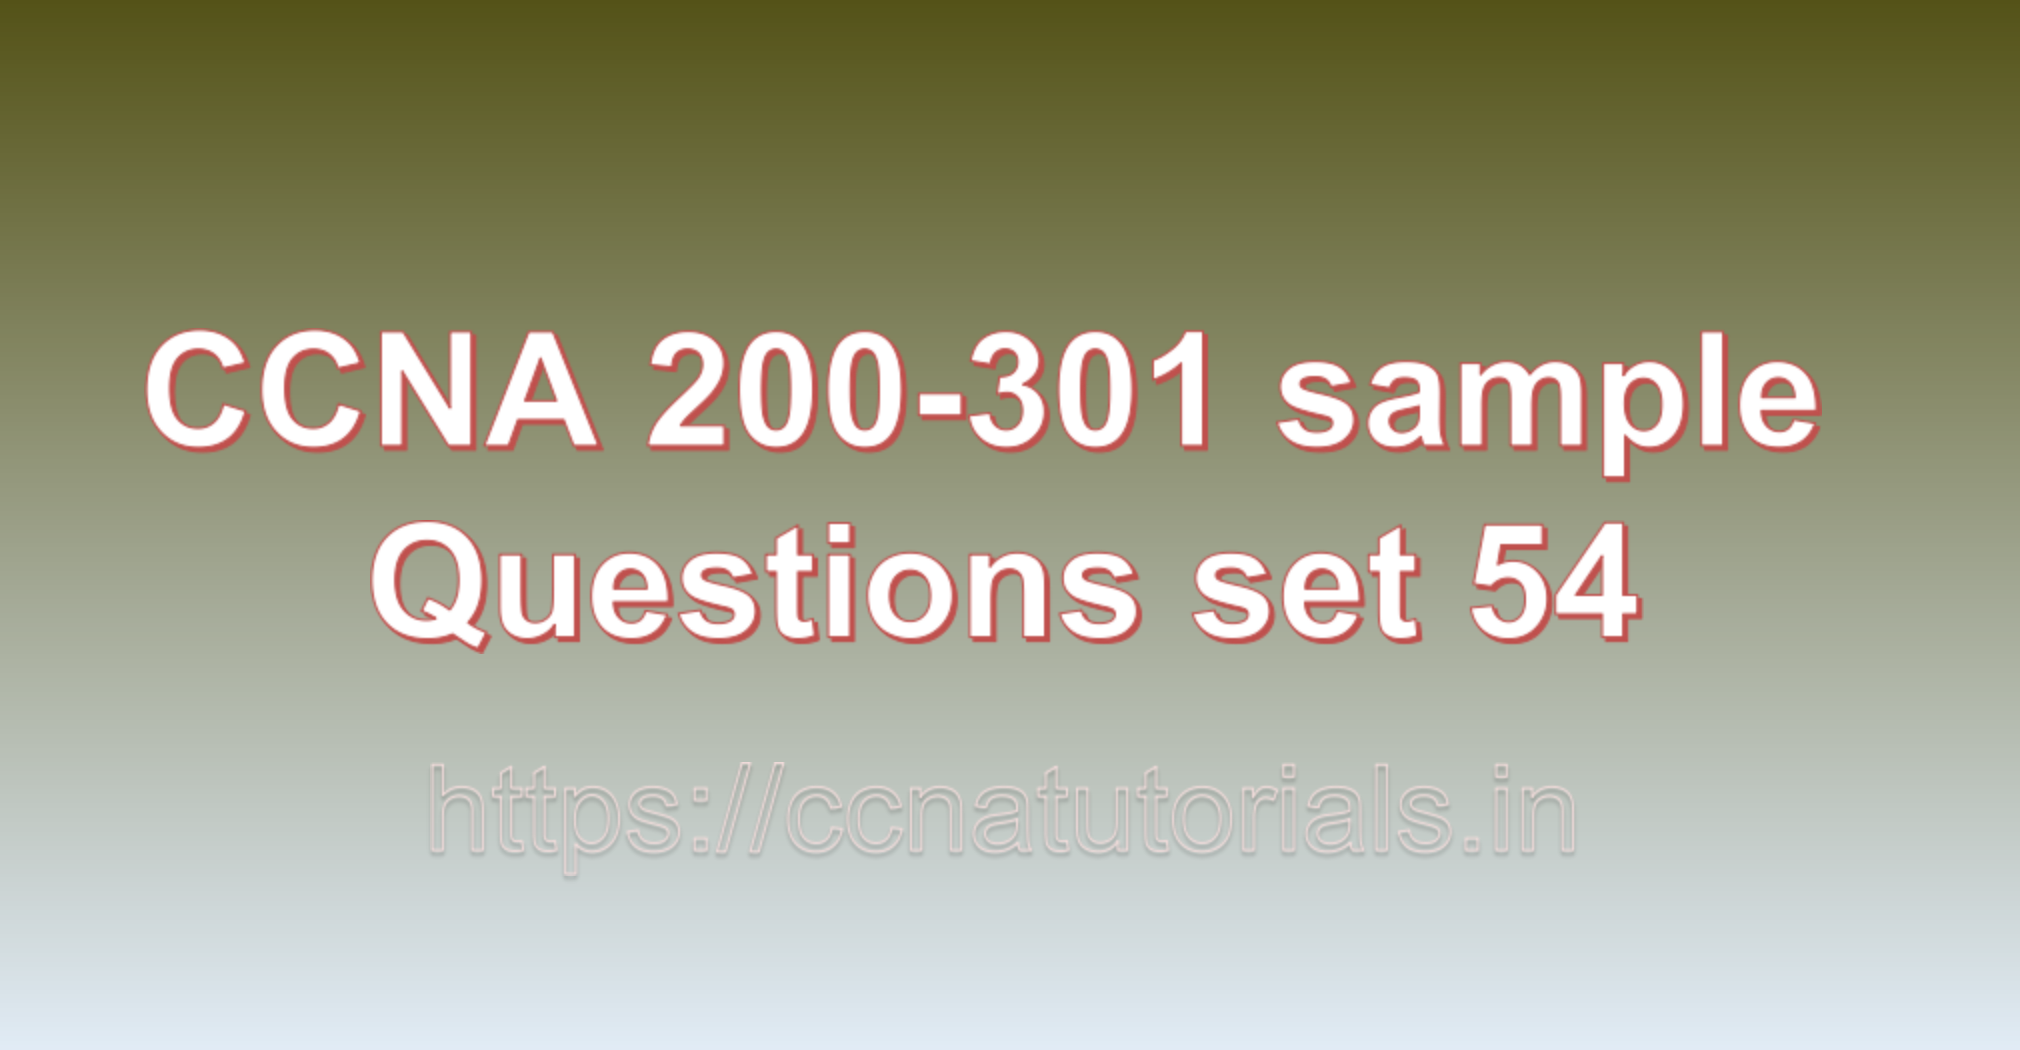 ccna sample questions set 54, ccna tutorials, CCNA Exam, ccna